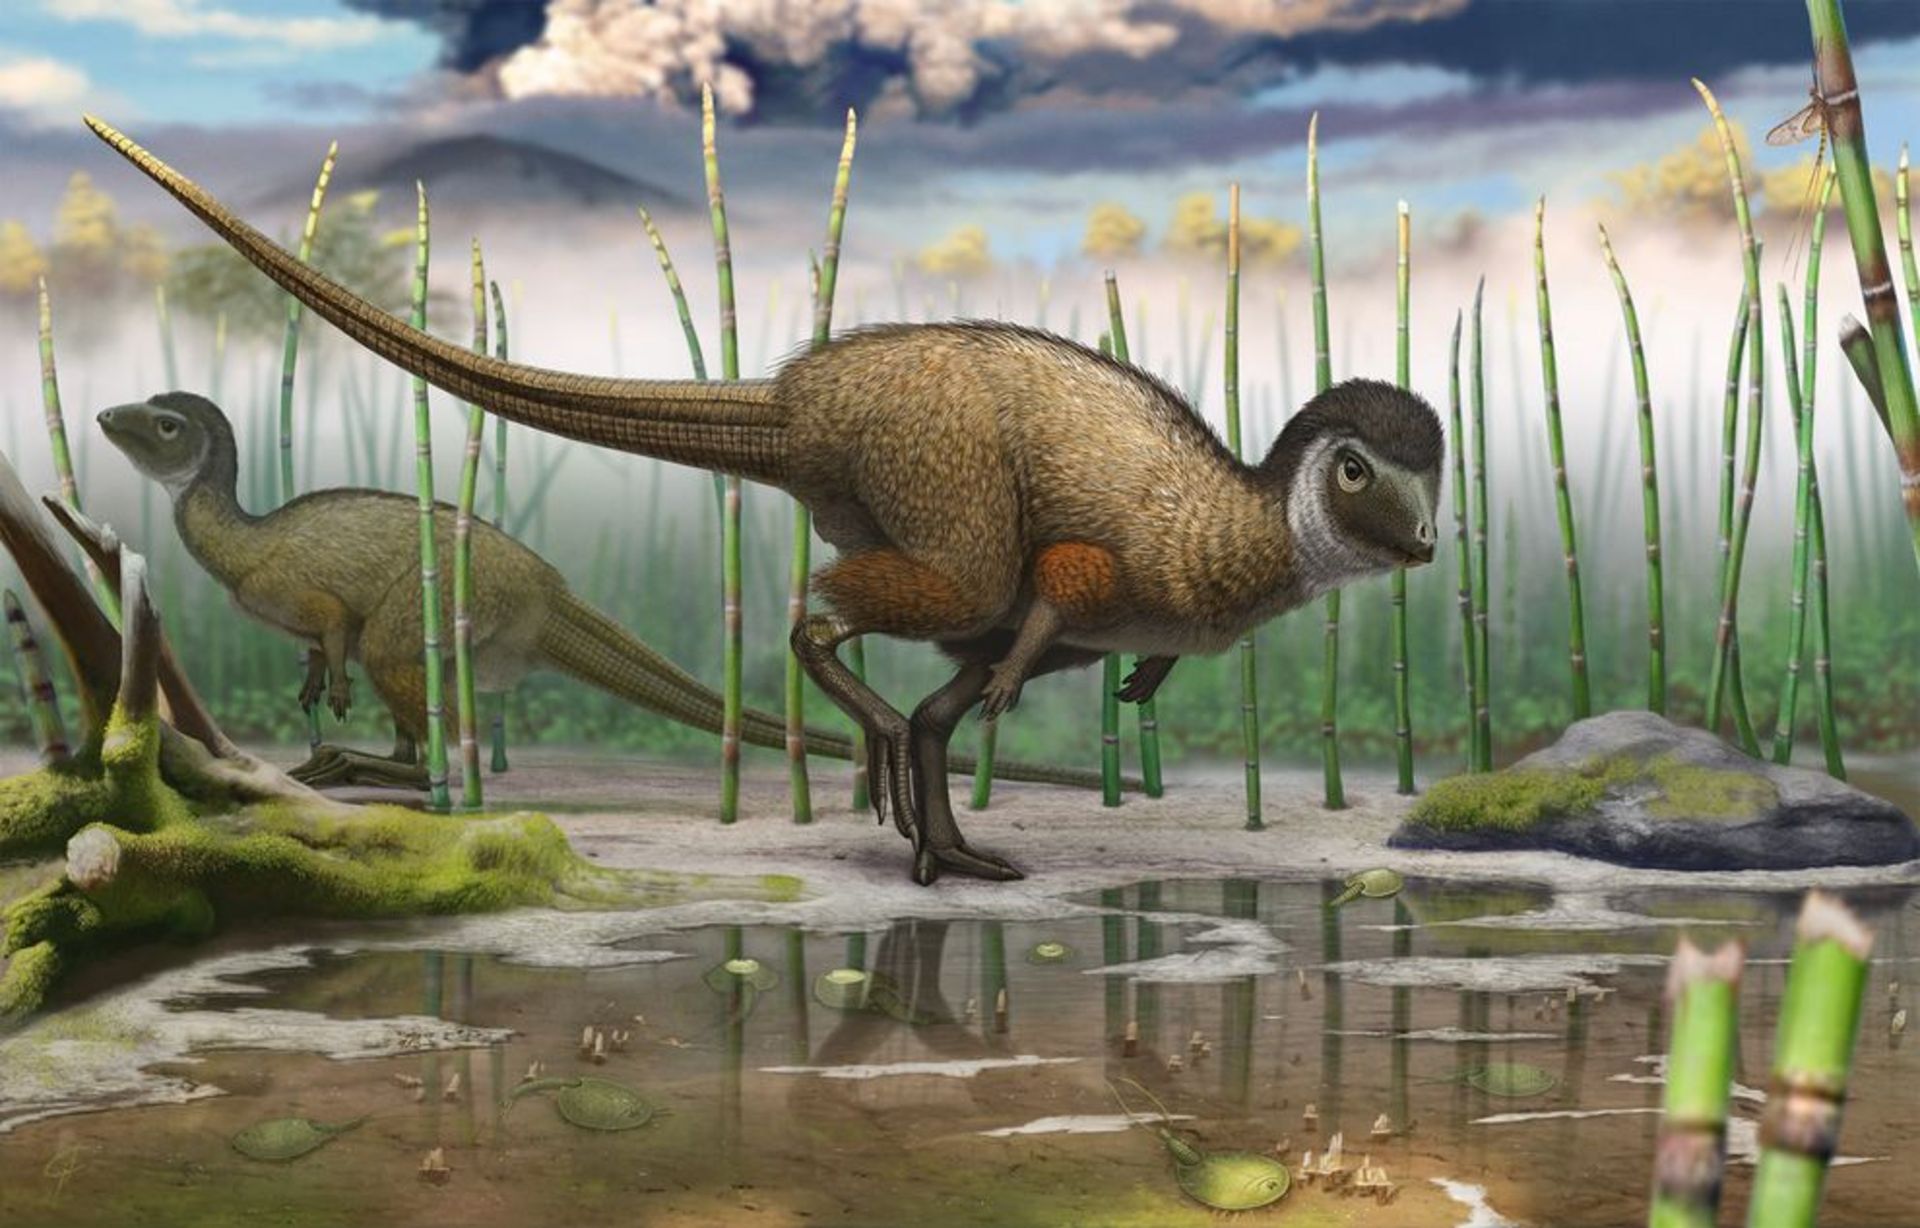 مرجع متخصصين ايران dinosaurs evolution / تكامل دايناسورها